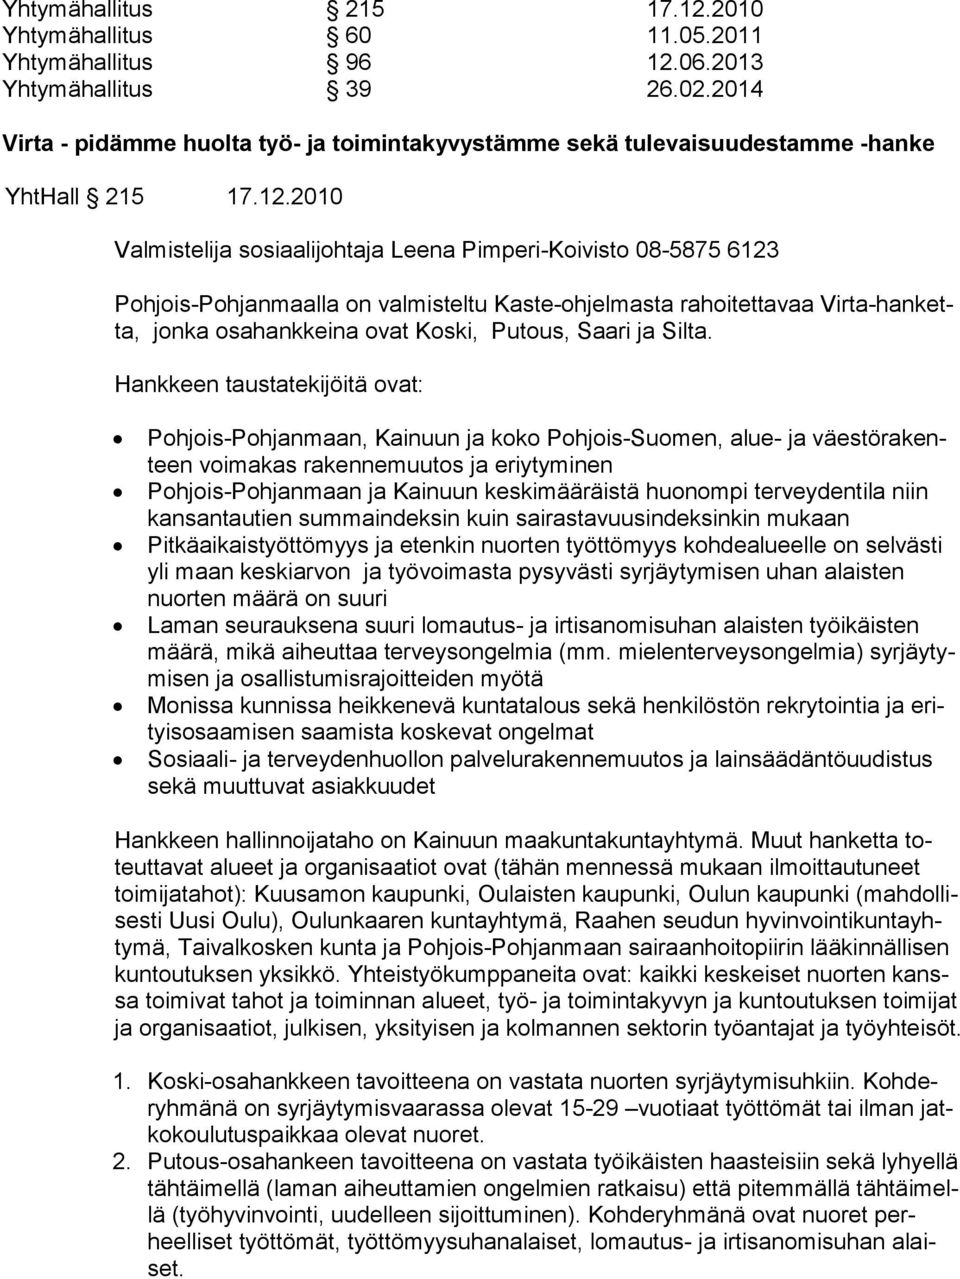 2010 Valmistelija sosiaalijohtaja Leena Pimperi-Koivisto 08-5875 6123 Pohjois-Pohjanmaalla on valmisteltu Kaste-ohjelmasta rahoitettavaa Virta-hanketta, jonka osahankkeina ovat Koski, Putous, Saari